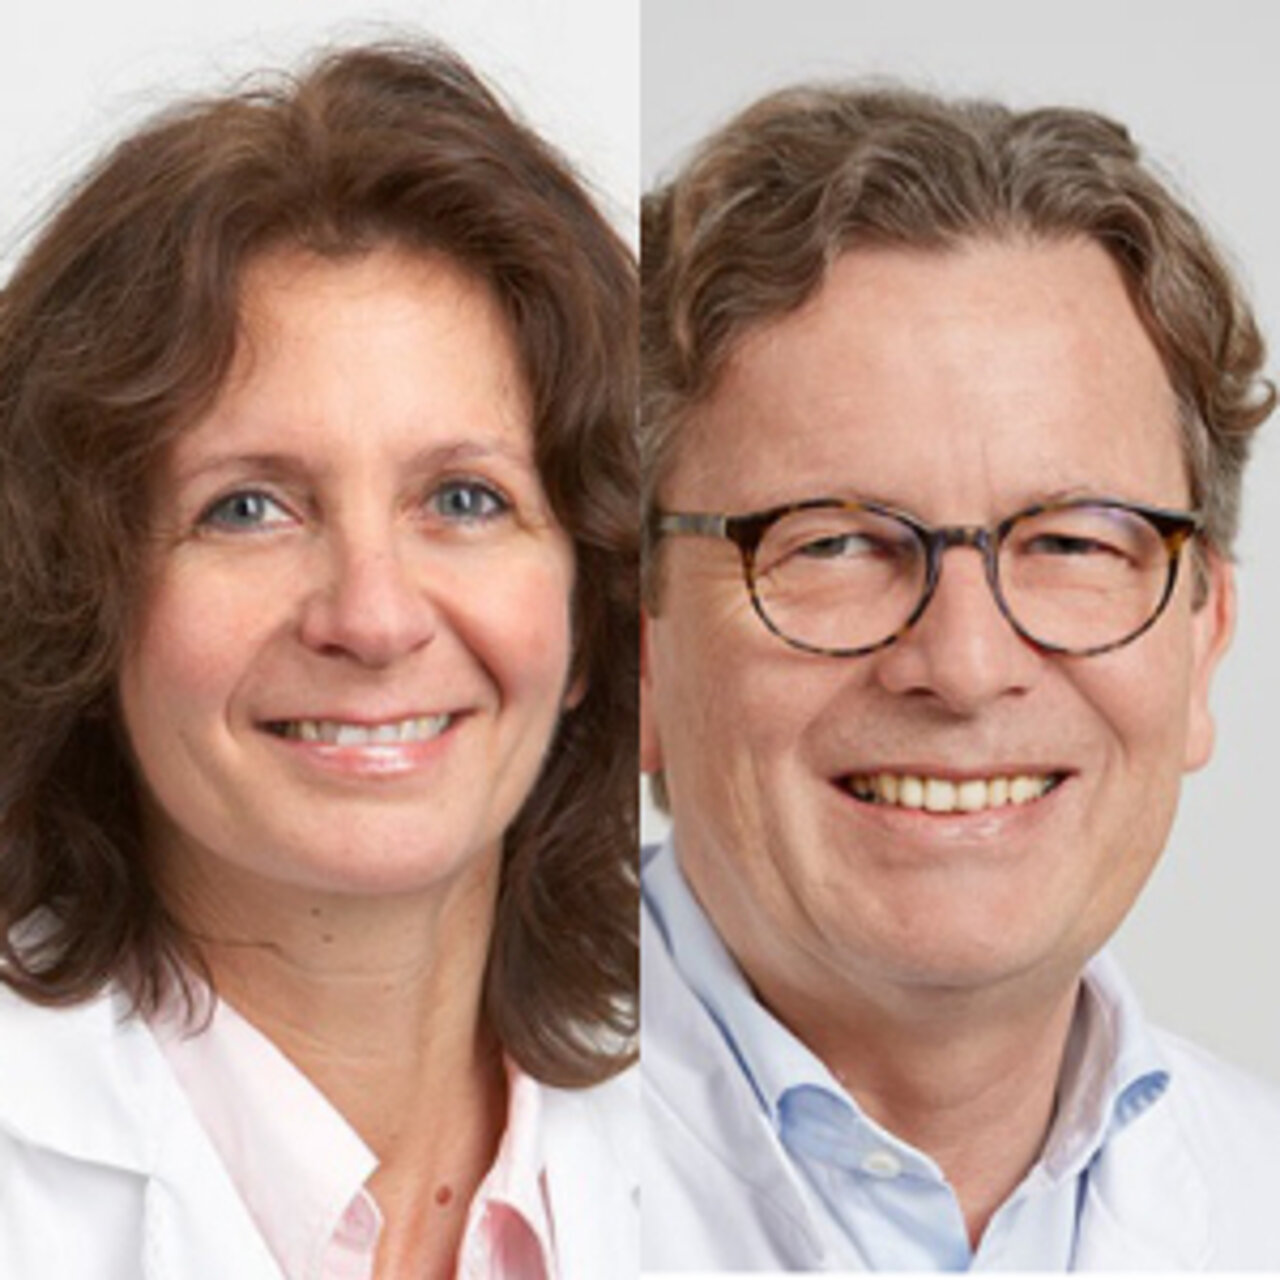 الصورة  - اختصاصيون في الأشعة العصبية  -  الأستاذة الدكتورة إيزابيل ڤانكيه والأستاذ الدكتور دانيل روفيناخت